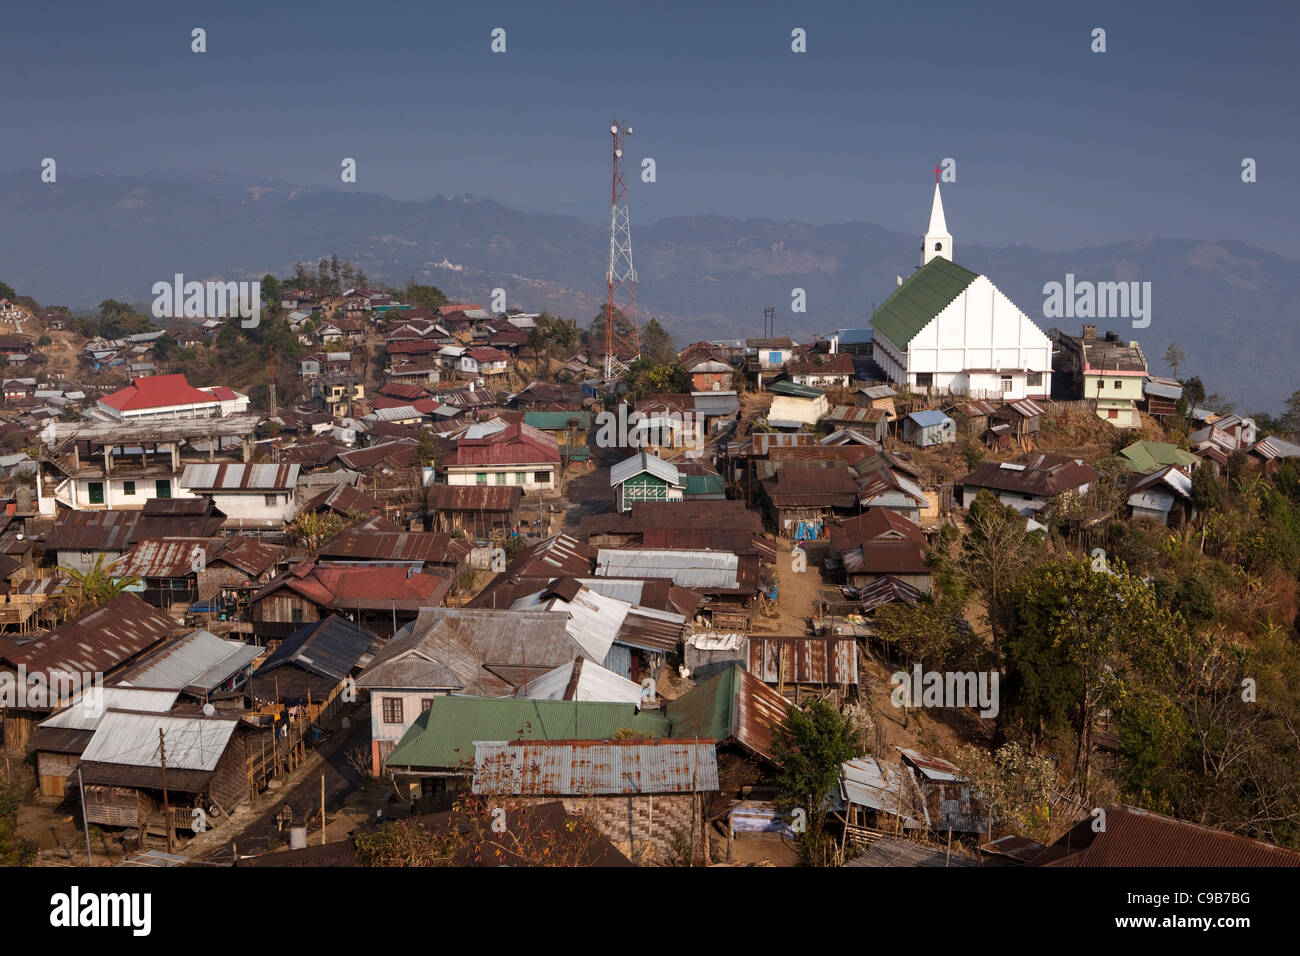 India, Nagaland, Longkhum, Iglesia cristiana ocupando posición destacada en la colina Foto de stock